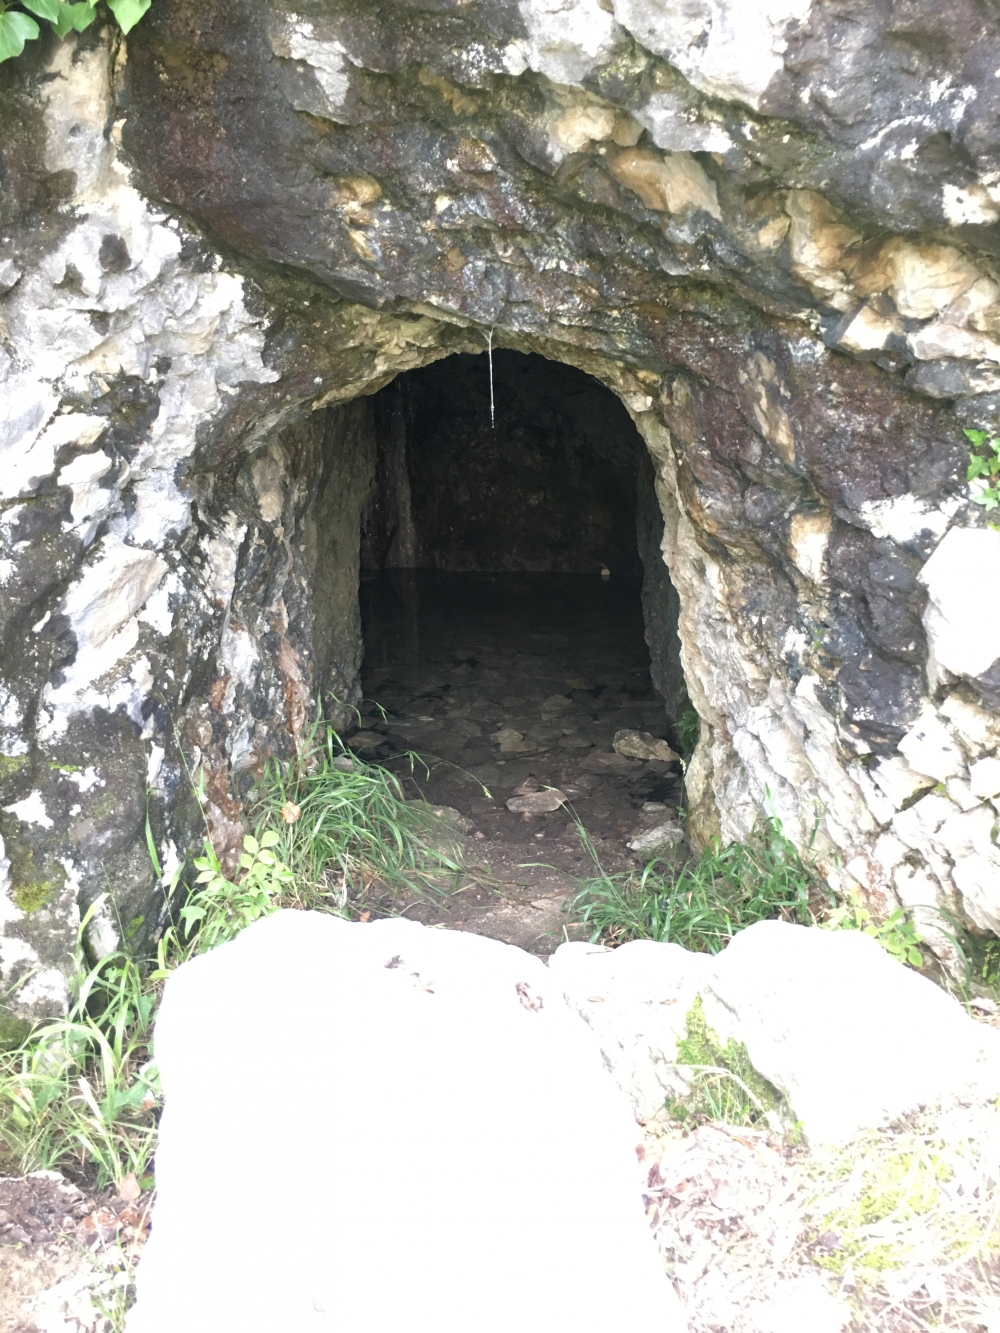 Höhle am Wegrand (innen steht Wasser)